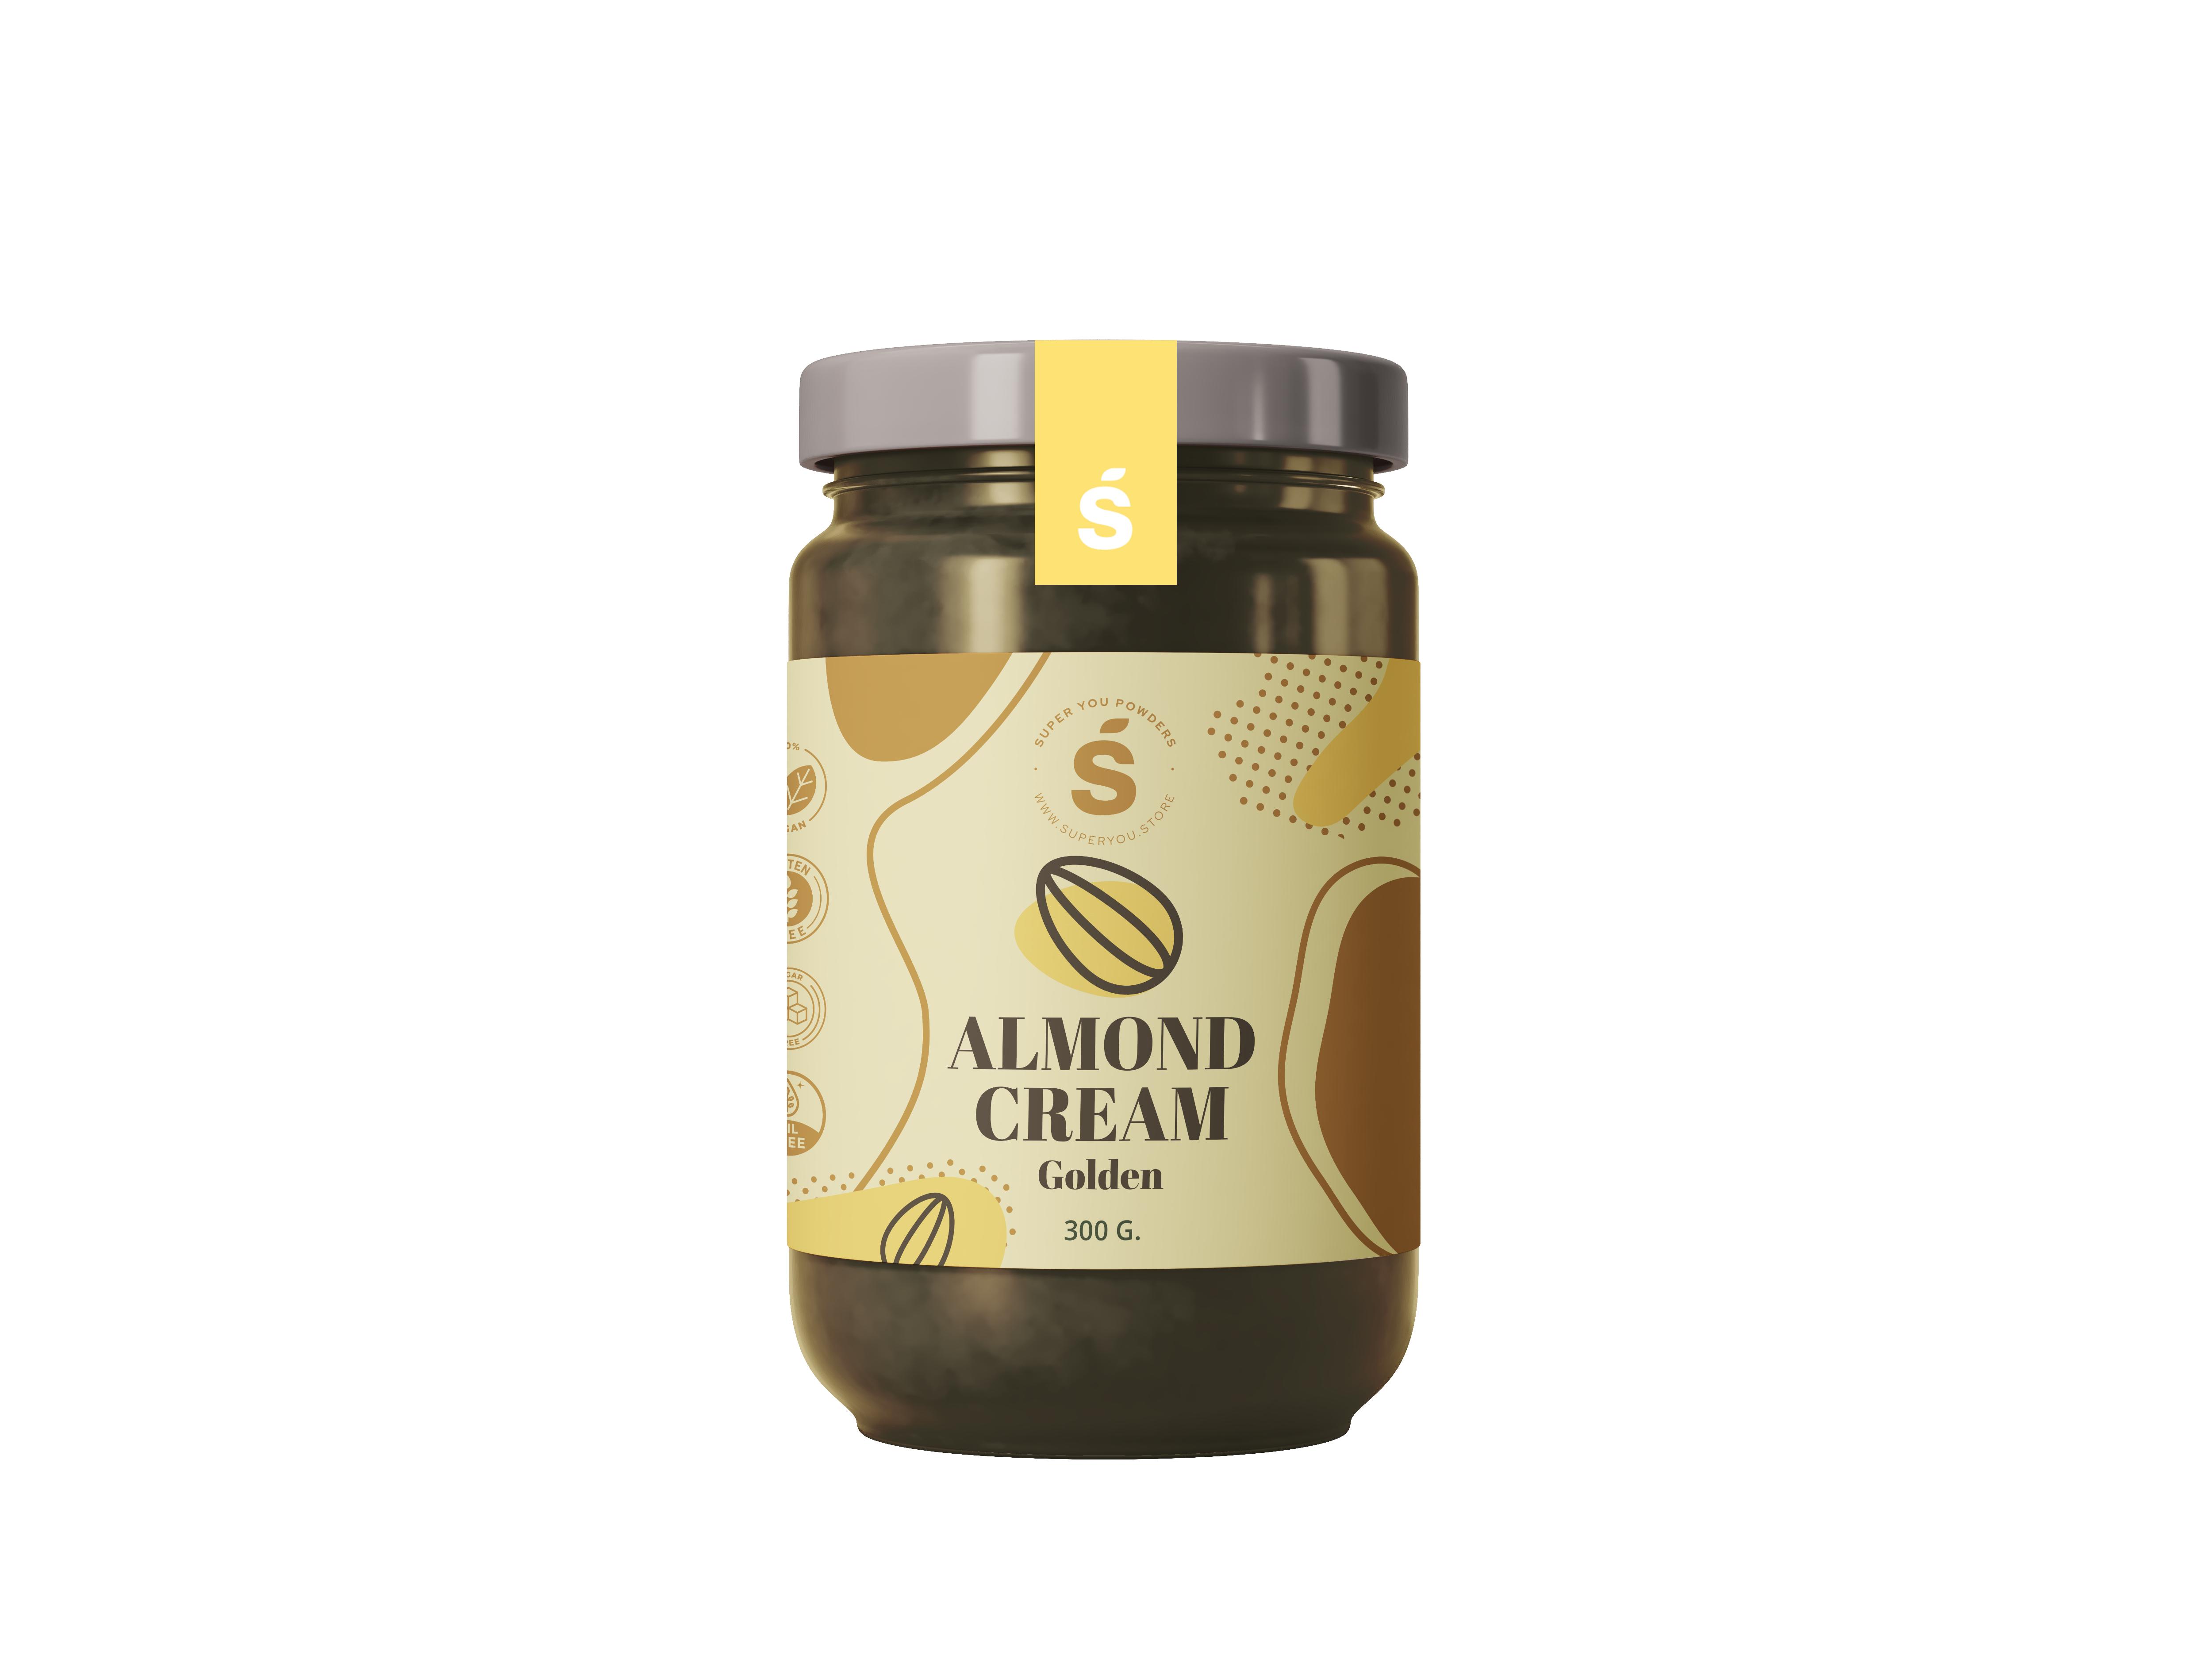 golden almond cream, natural market, superfod, superyou, Descubrėkite natūralios migdolų grietinėlės magiją!  Ar norėtumėte mėgautis skaniu ir sveiku maistu, kuris pakeis jūsų valgius ir užkandžius? Mūsų natūrali migdolų grietinėlė yra atsakymas, kurį ieškote. Pagamintas iš aukščiausios kokybės migdolų, be jokių priedų ar konservantų, tai užtikrina gryną skonį ir mitybinę naudą kiekvienoje šaukštelio dalyje.